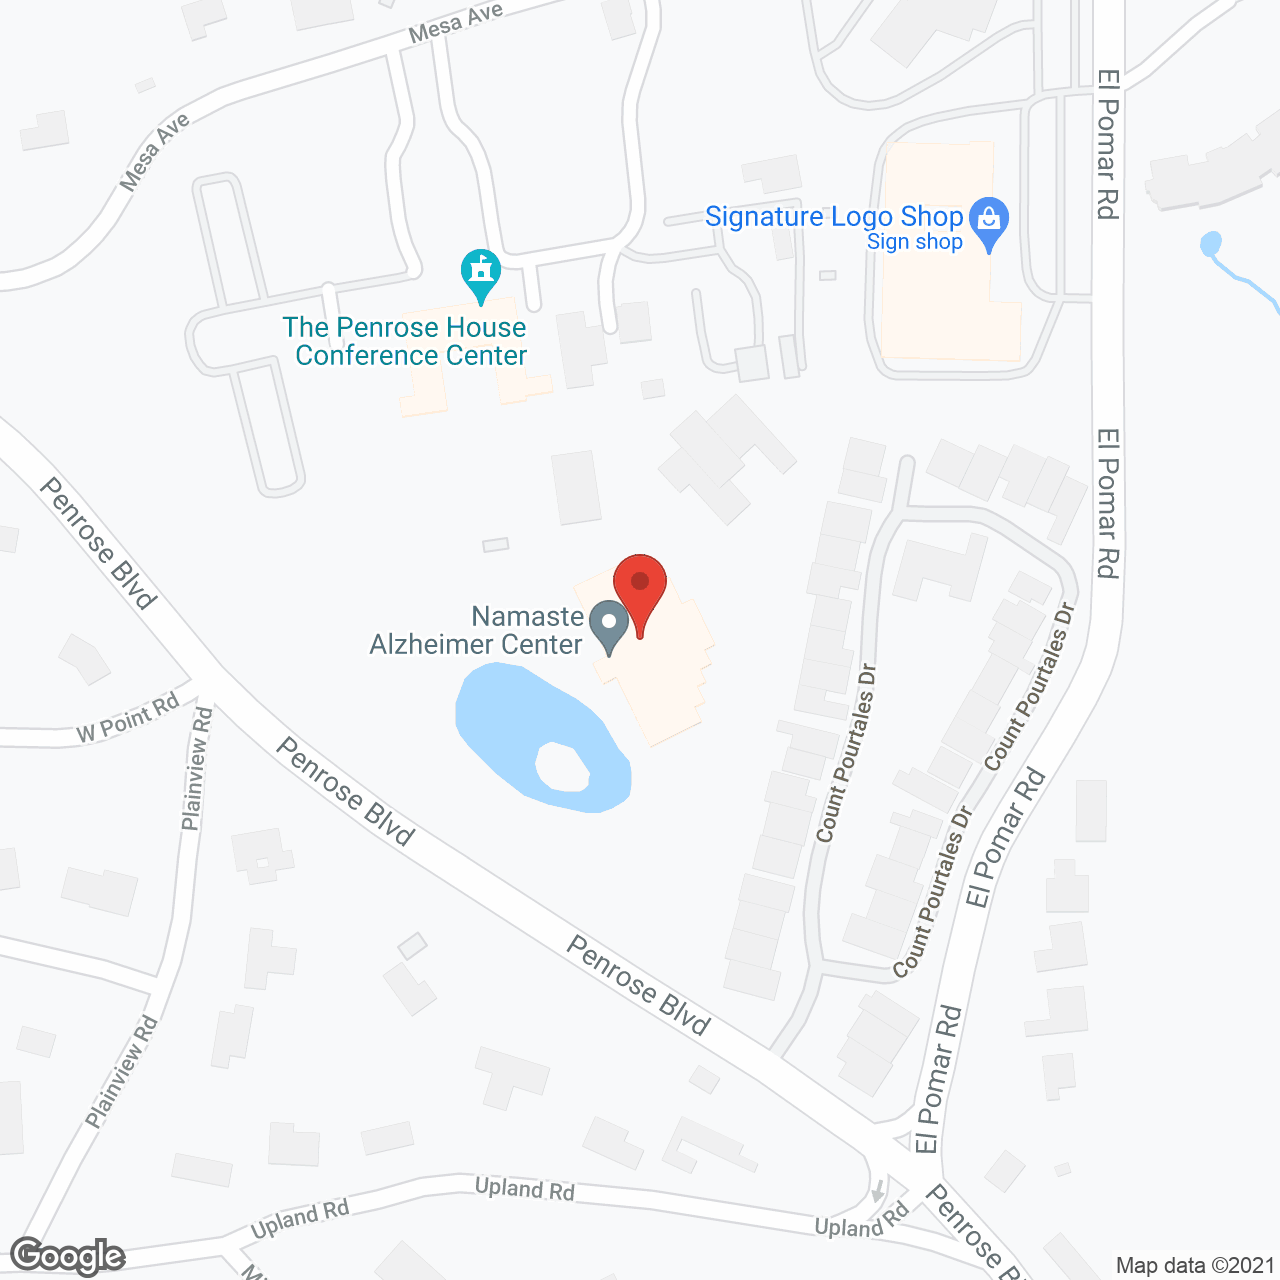 Namaste Alzheimer Center in google map